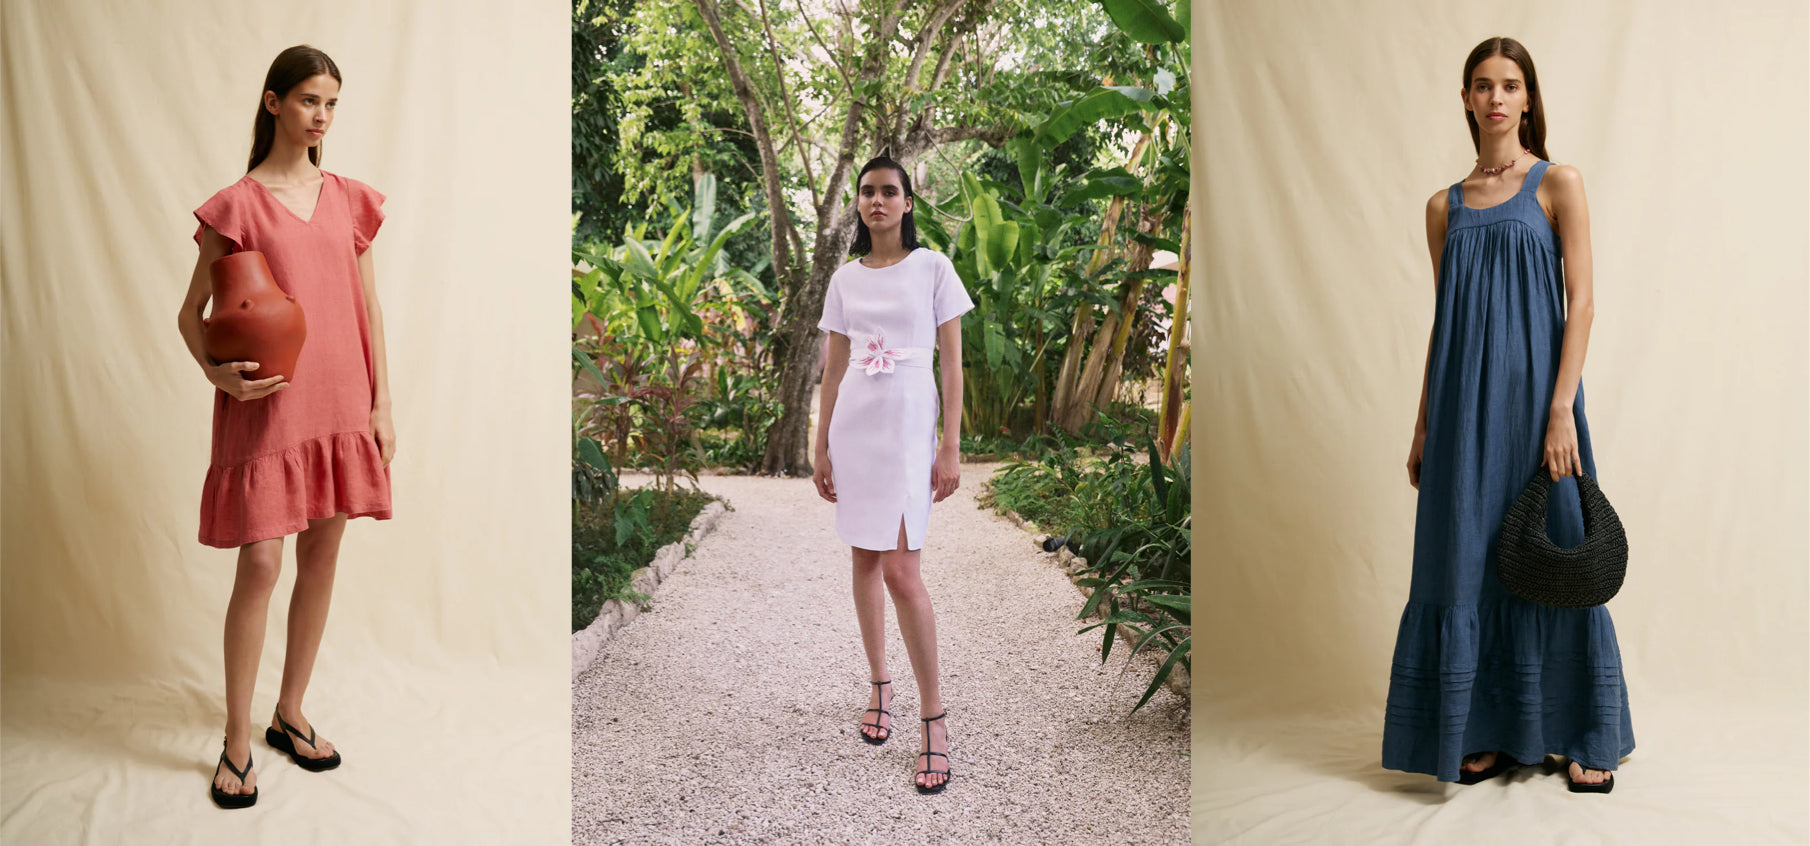 Vestidos para Playa de Mujer: Mejores telas, colores y estilos. – Abito